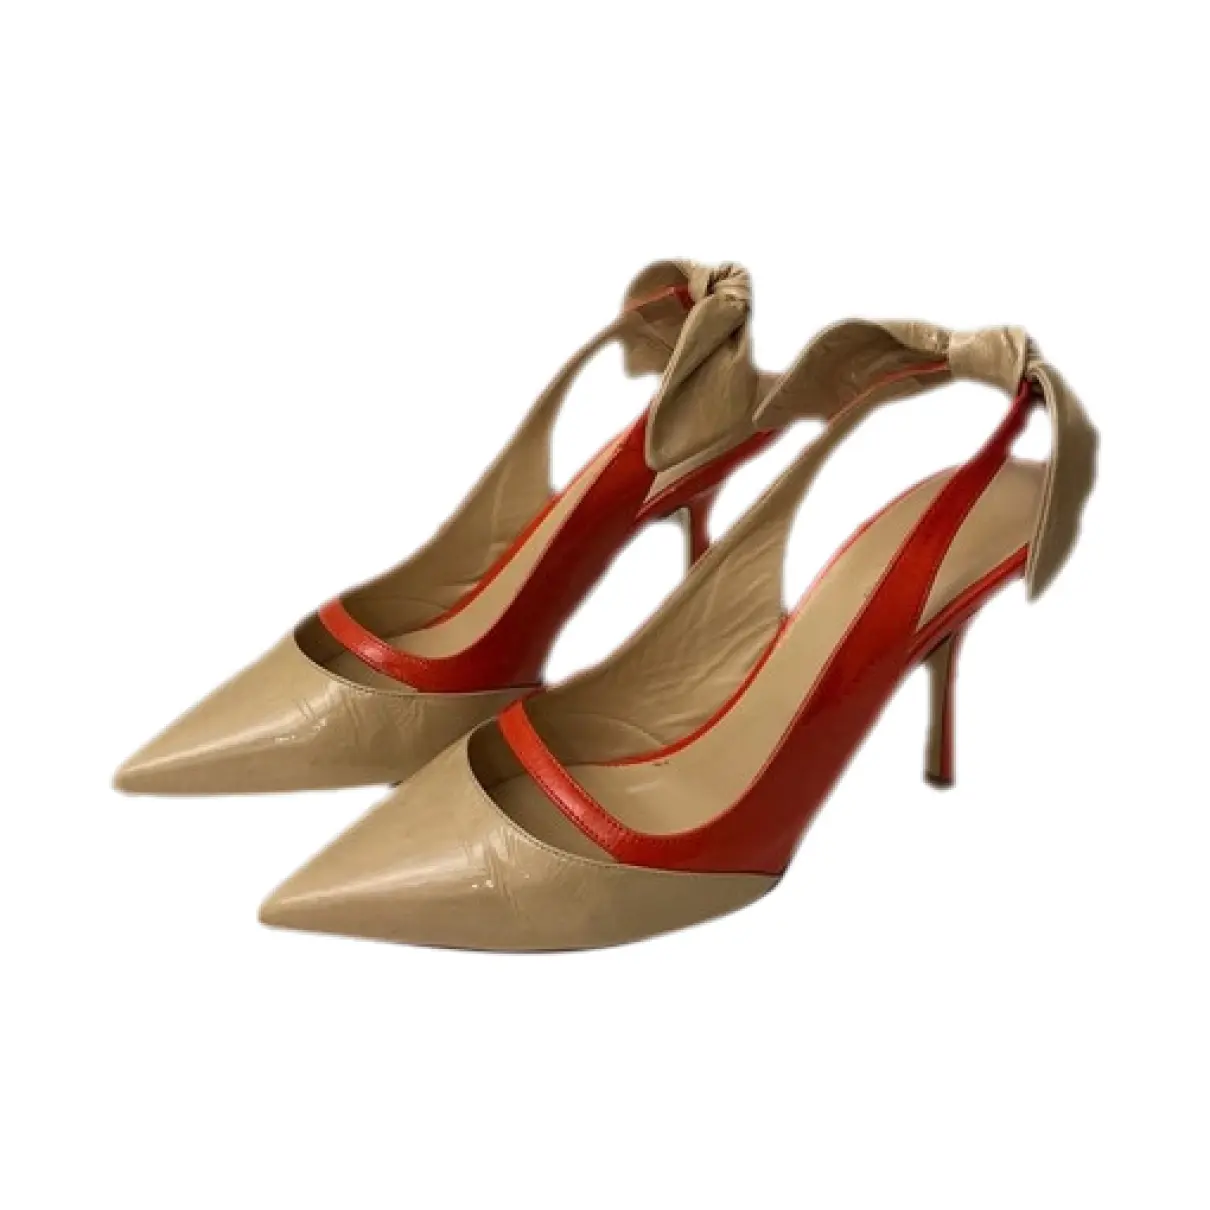 Patent leather heels Erika Cavallini